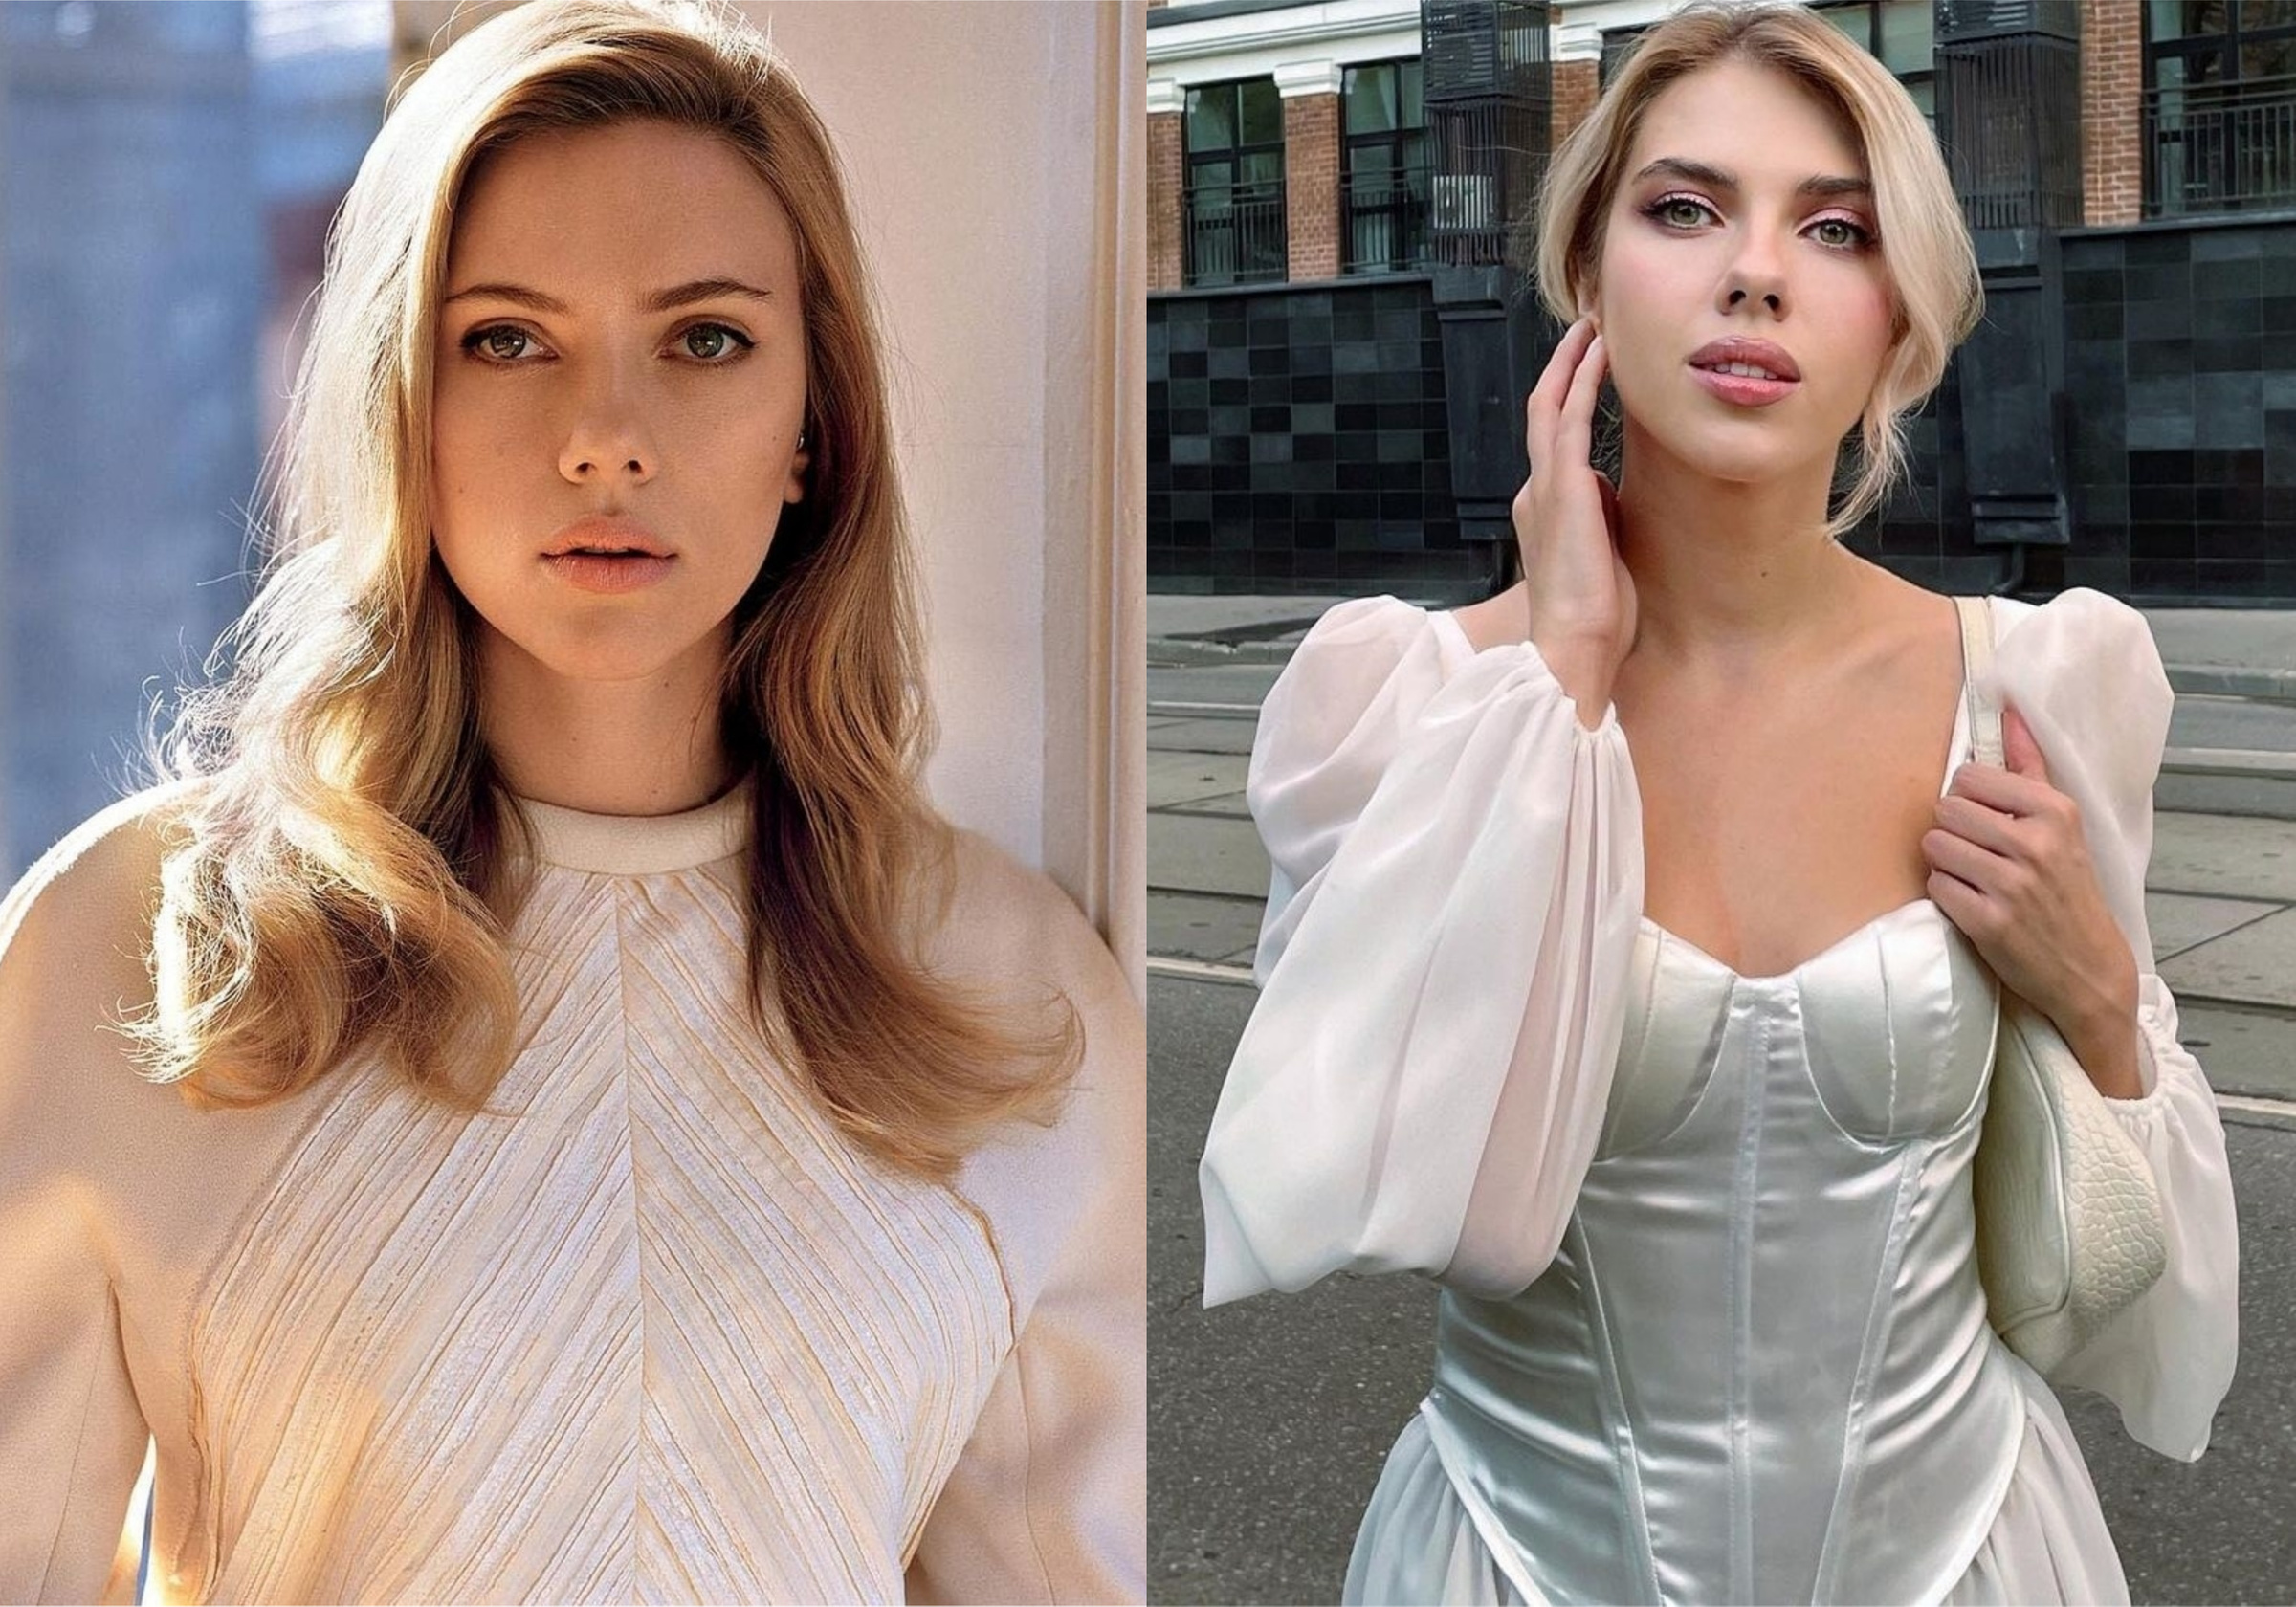 Слева — Скарлетт Йоханссон, справа — Катя Шумская. Фото © Instagram / scarlettjohanssonworld и mimisskate